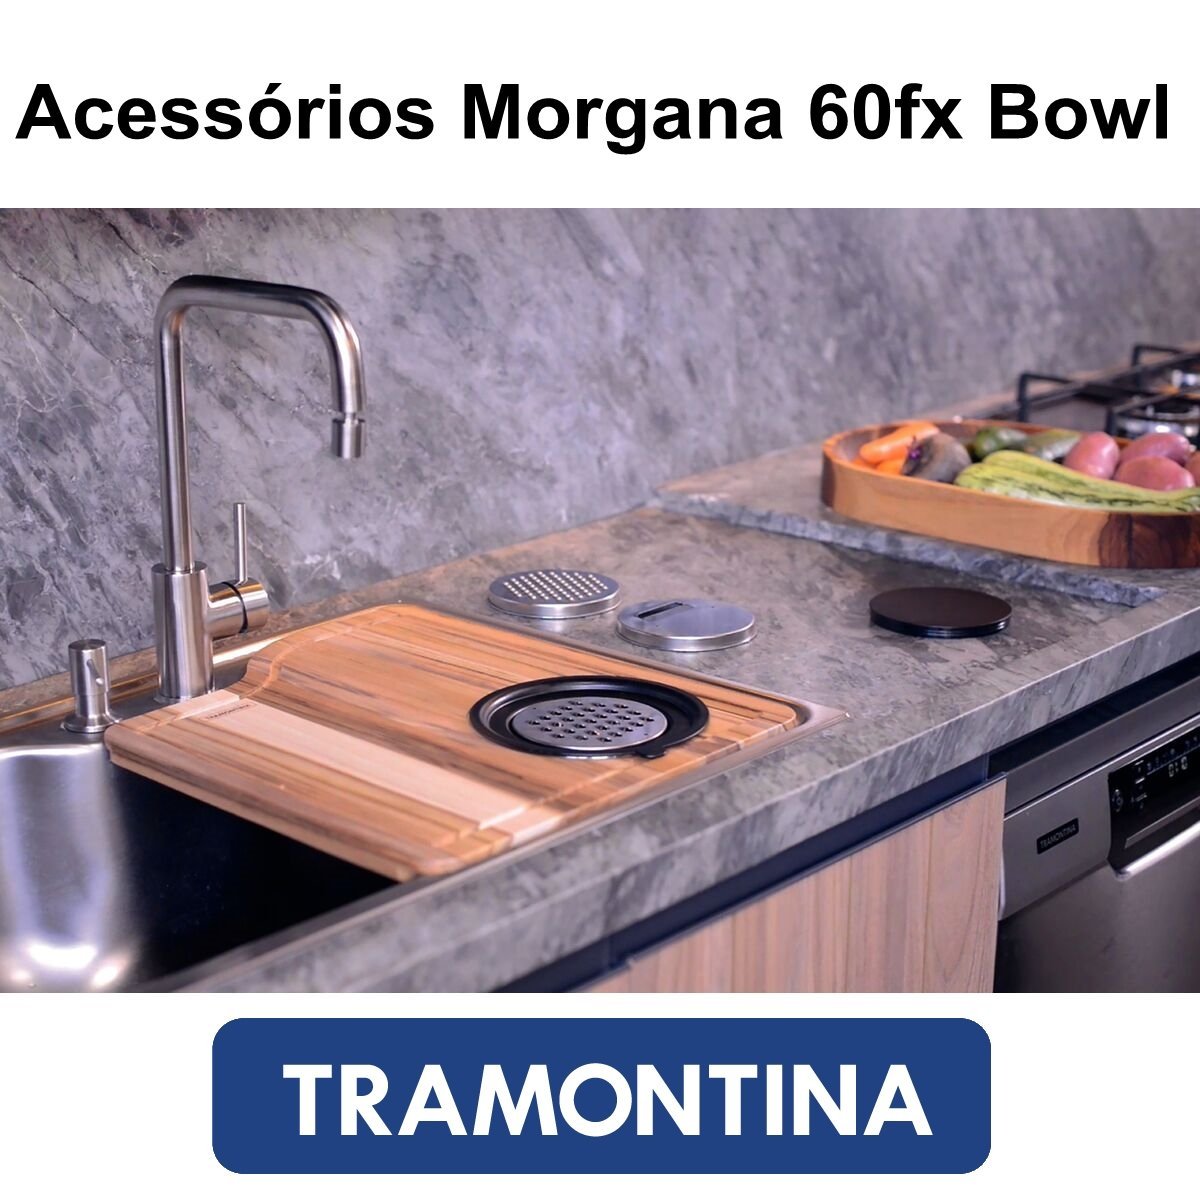 Acessórios Bowl Para a Cuba Tramontina Morgana 60Fx